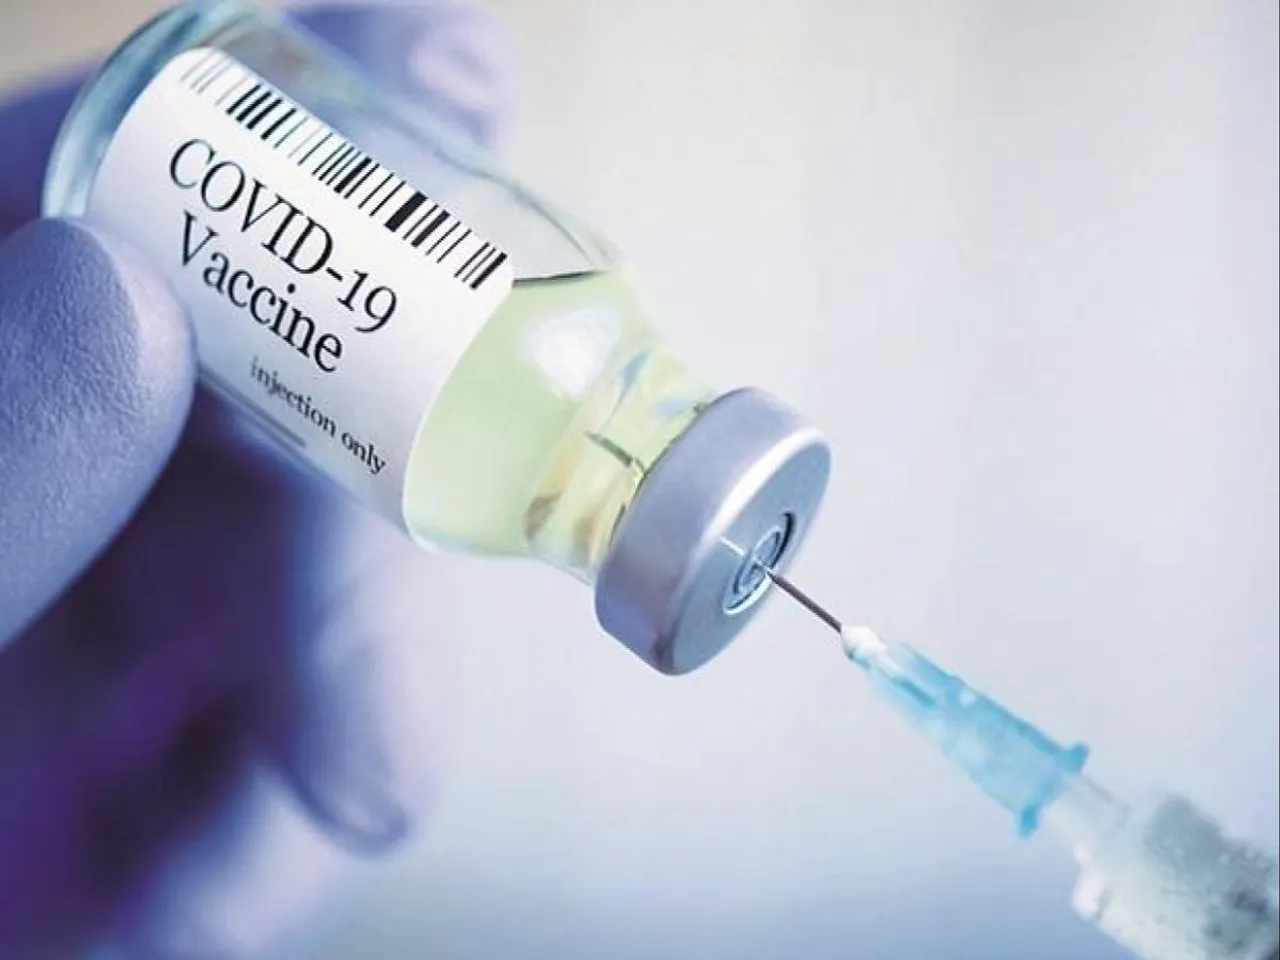 भारत में कोविड-19 वैक्सीनेशन प्रोग्राम की शुरुआत 16 जनवरी से होने को तैयार